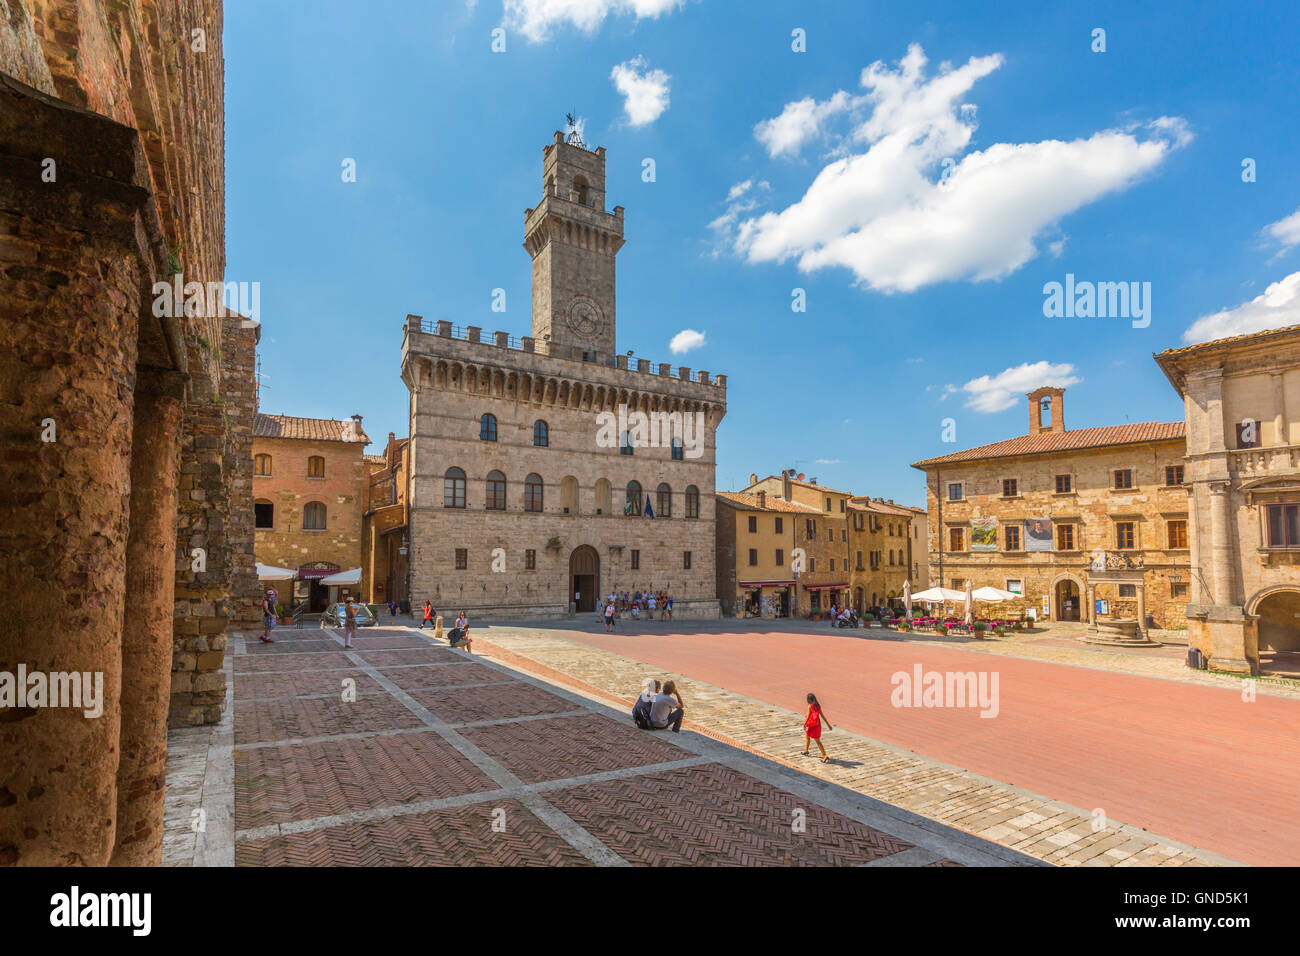 Montepulciano in provincia di Siena, Toscana, Italia. Il Palazzo Comunale risale al XIII secolo su Piazza Grande. Foto Stock